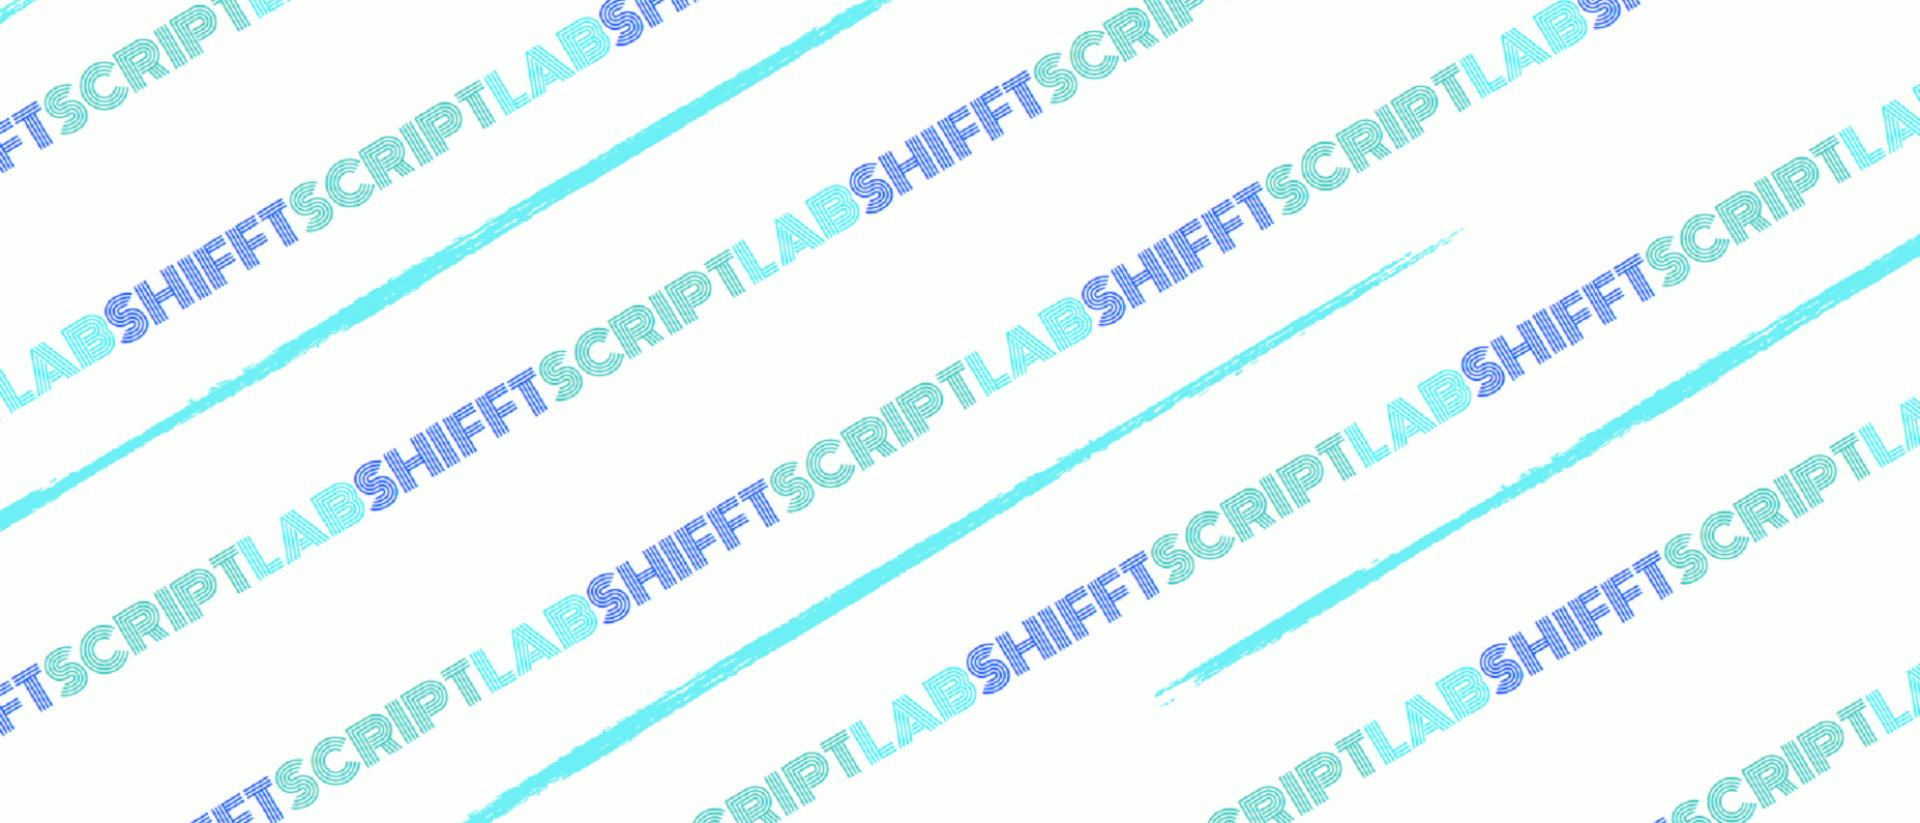 the SHIFFT script lab logo